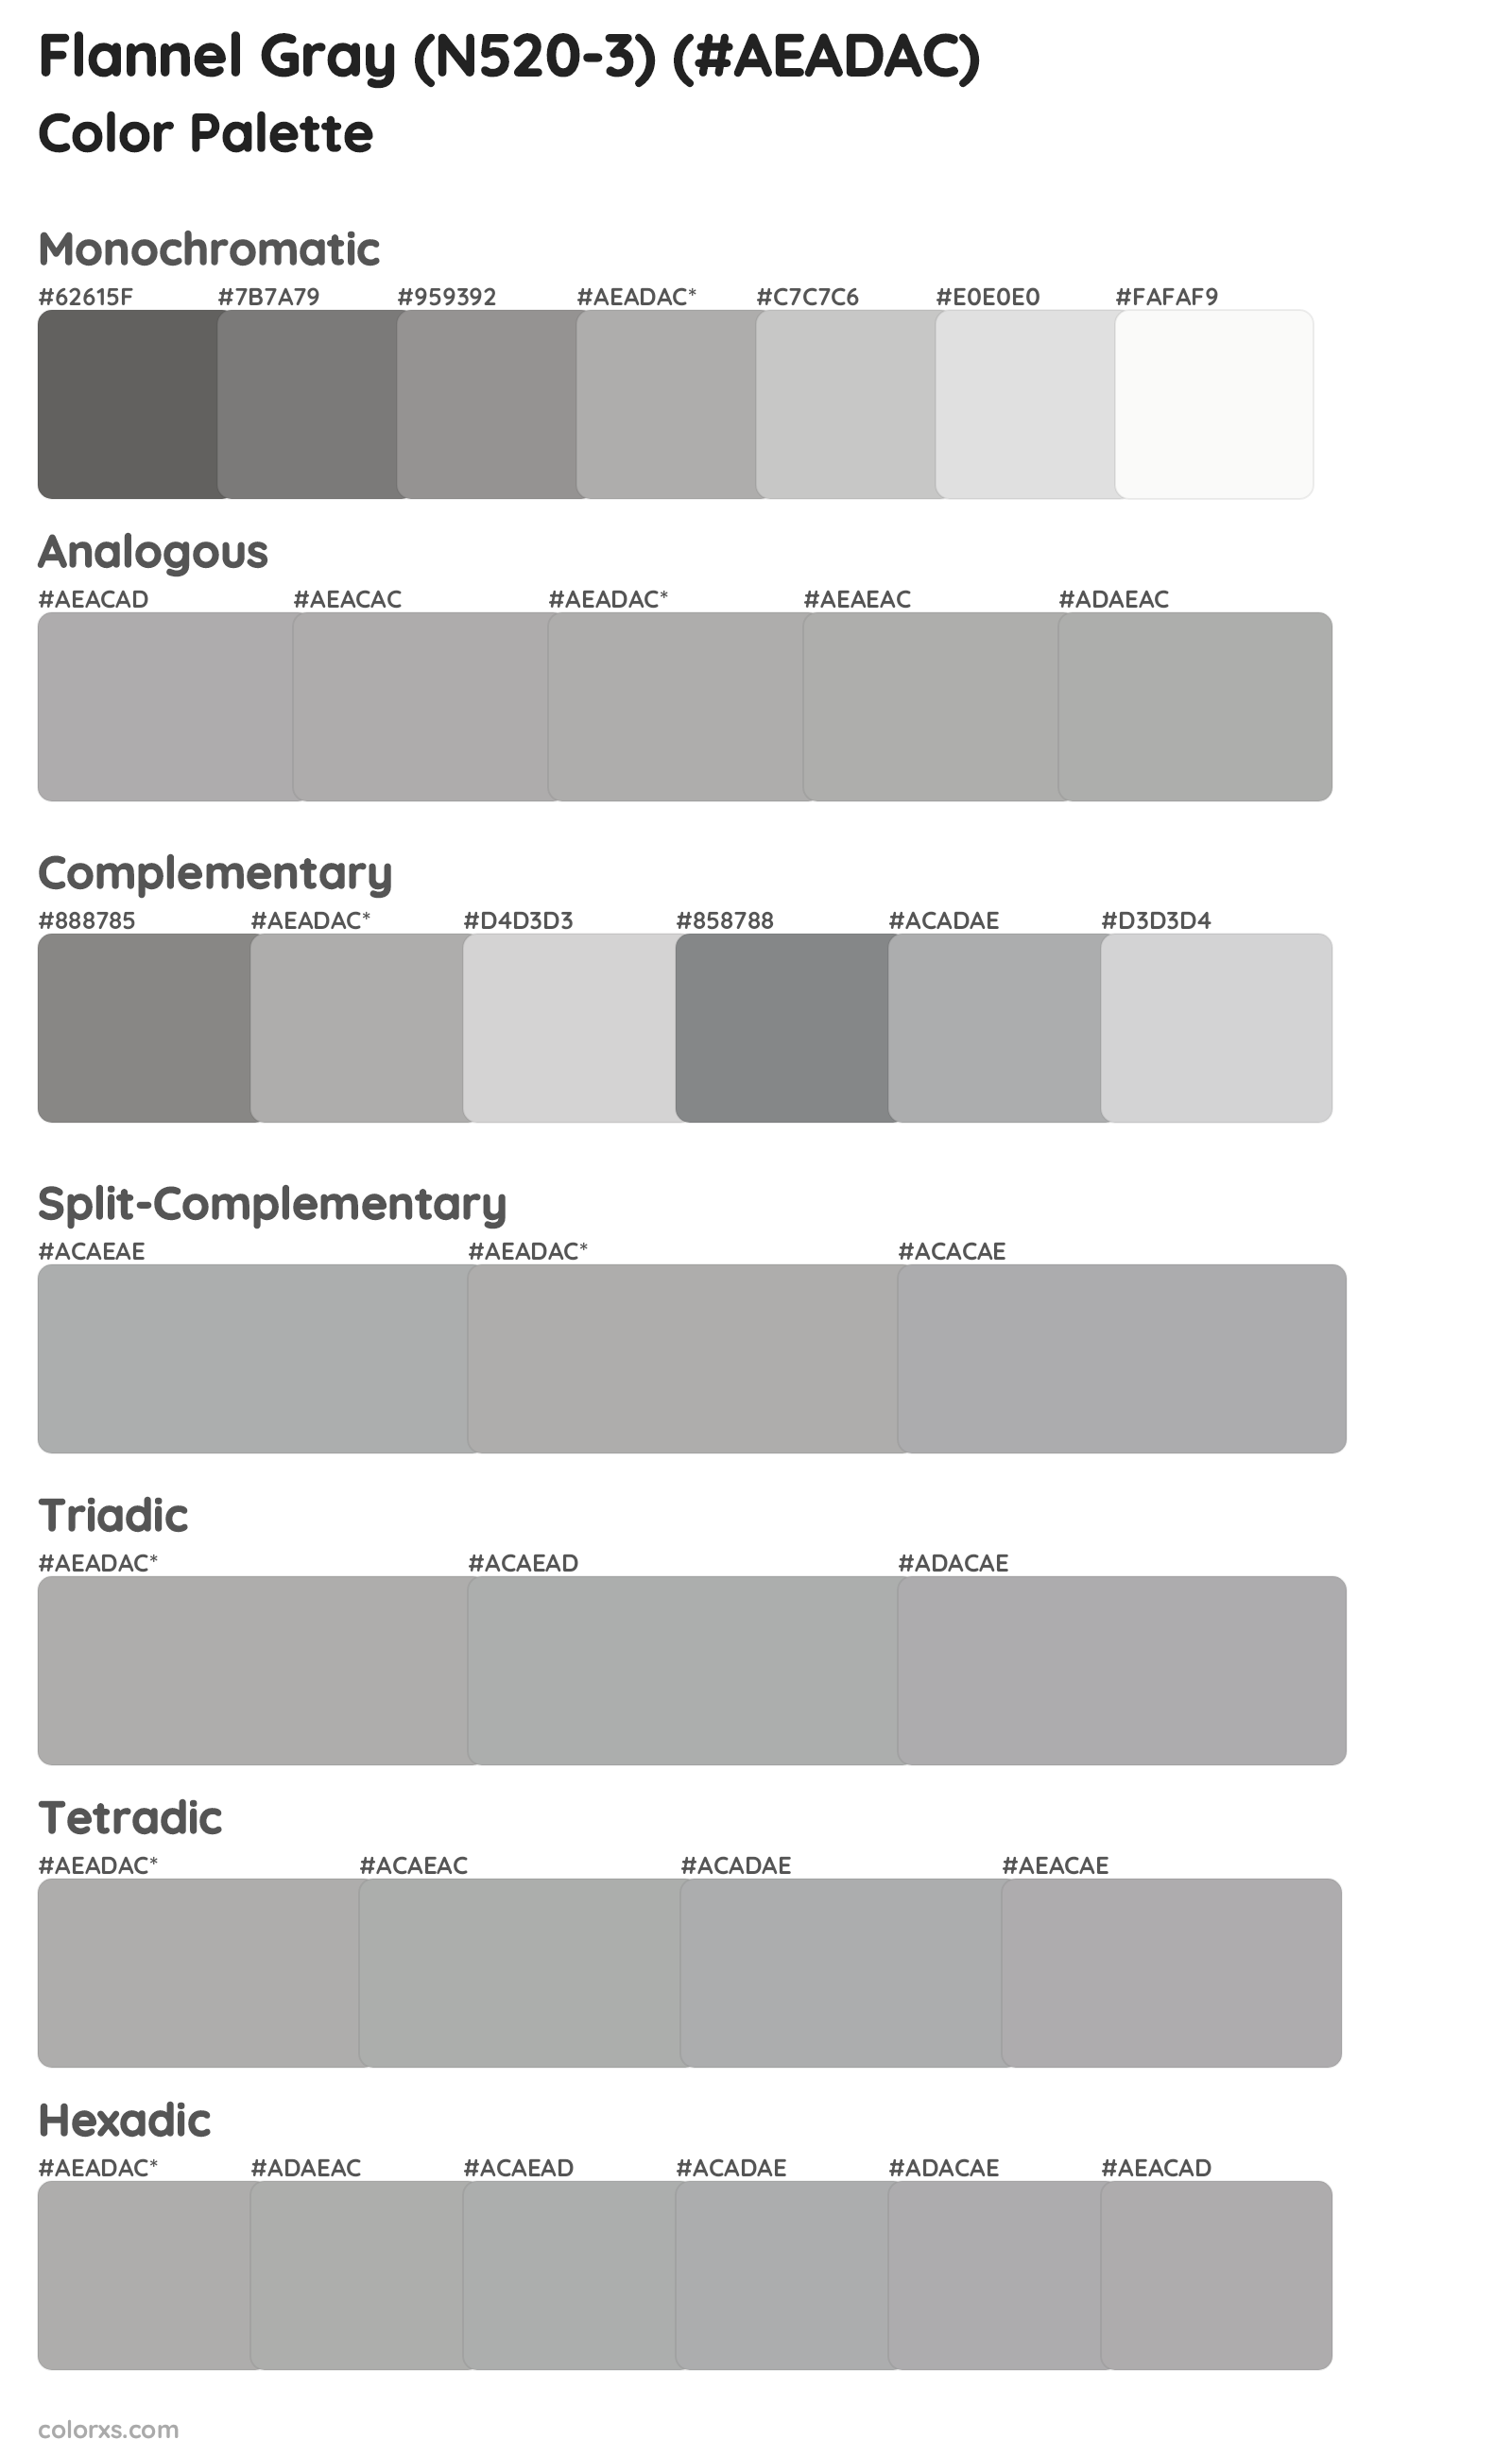 Flannel Gray (N520-3) Color Scheme Palettes